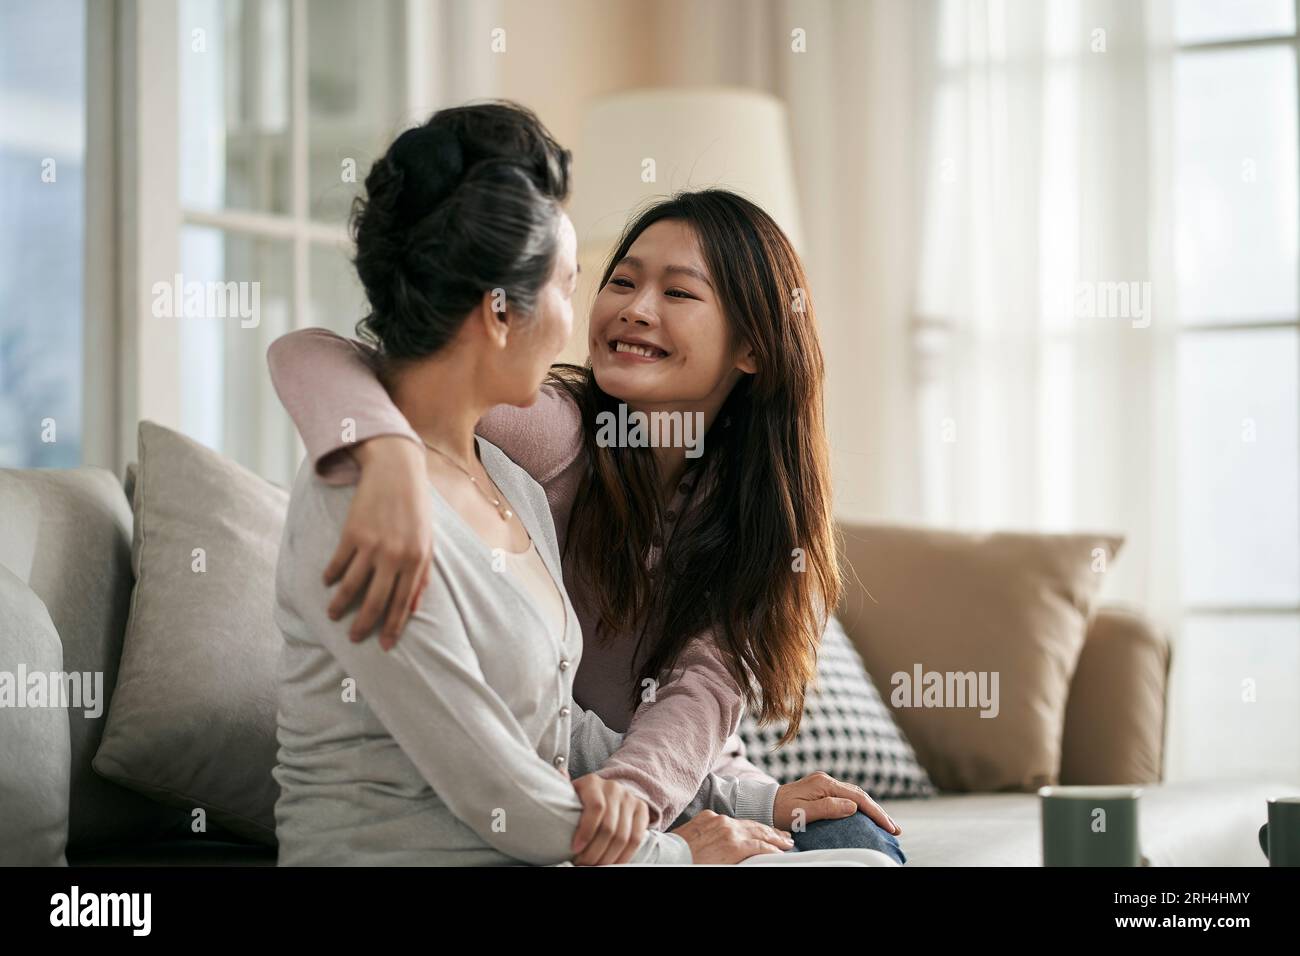 asiatische Erwachsene Tochter und Seniorenmutter, die zu Hause auf der Couch sitzen und ein angenehmes Gespräch führen Stockfoto